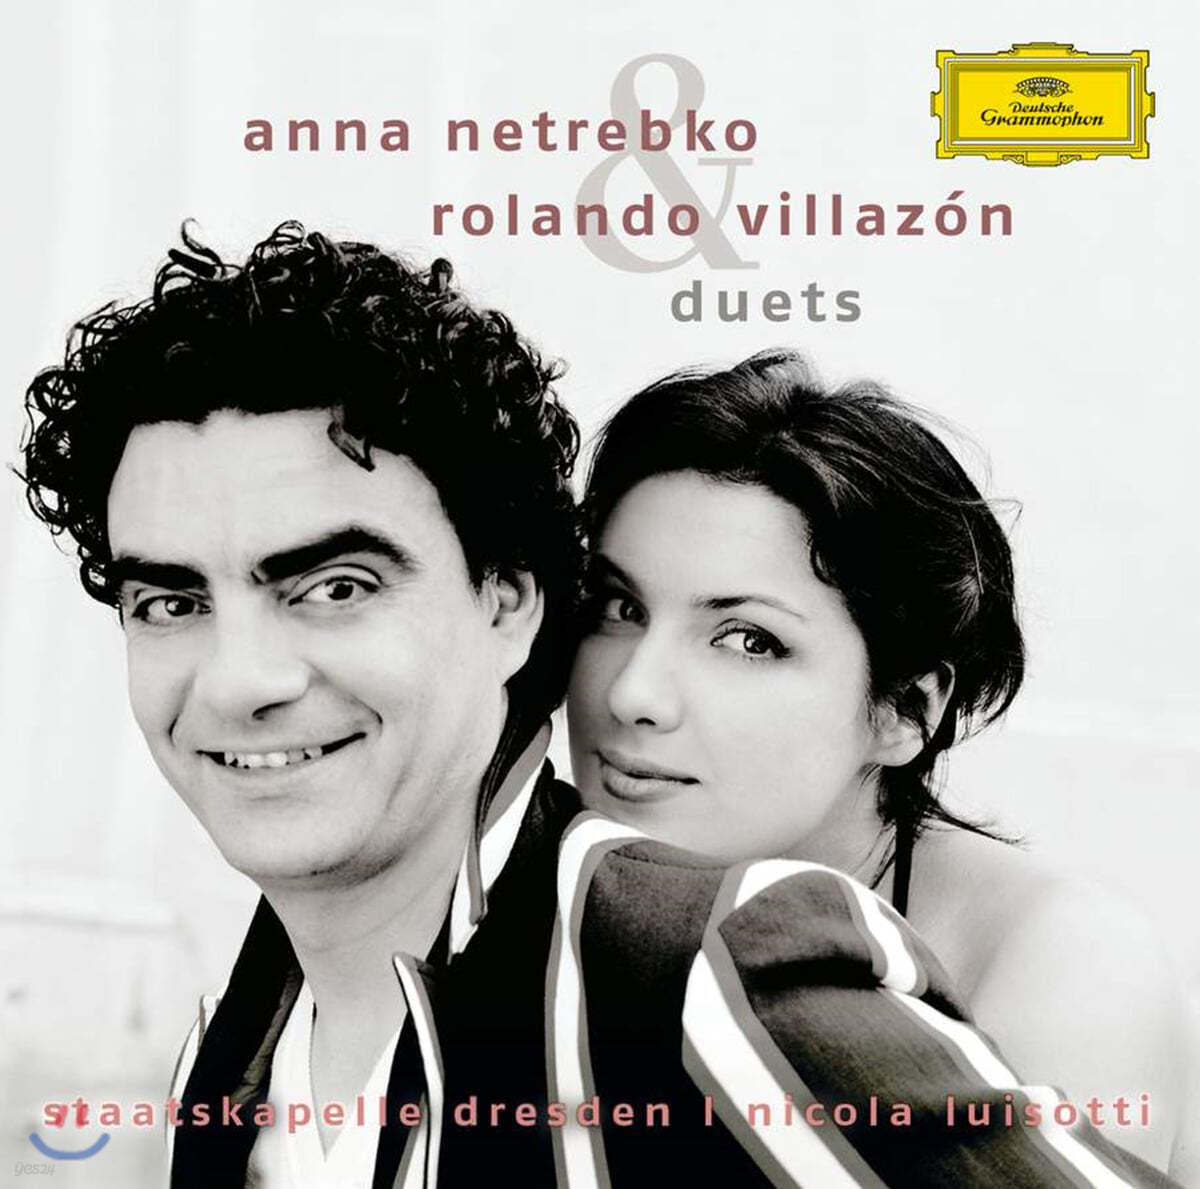 듀엣 - 안나 네트렙코 / 롤란도 빌라존 (Anna Netrebko / Rolando Villazon - Duets)